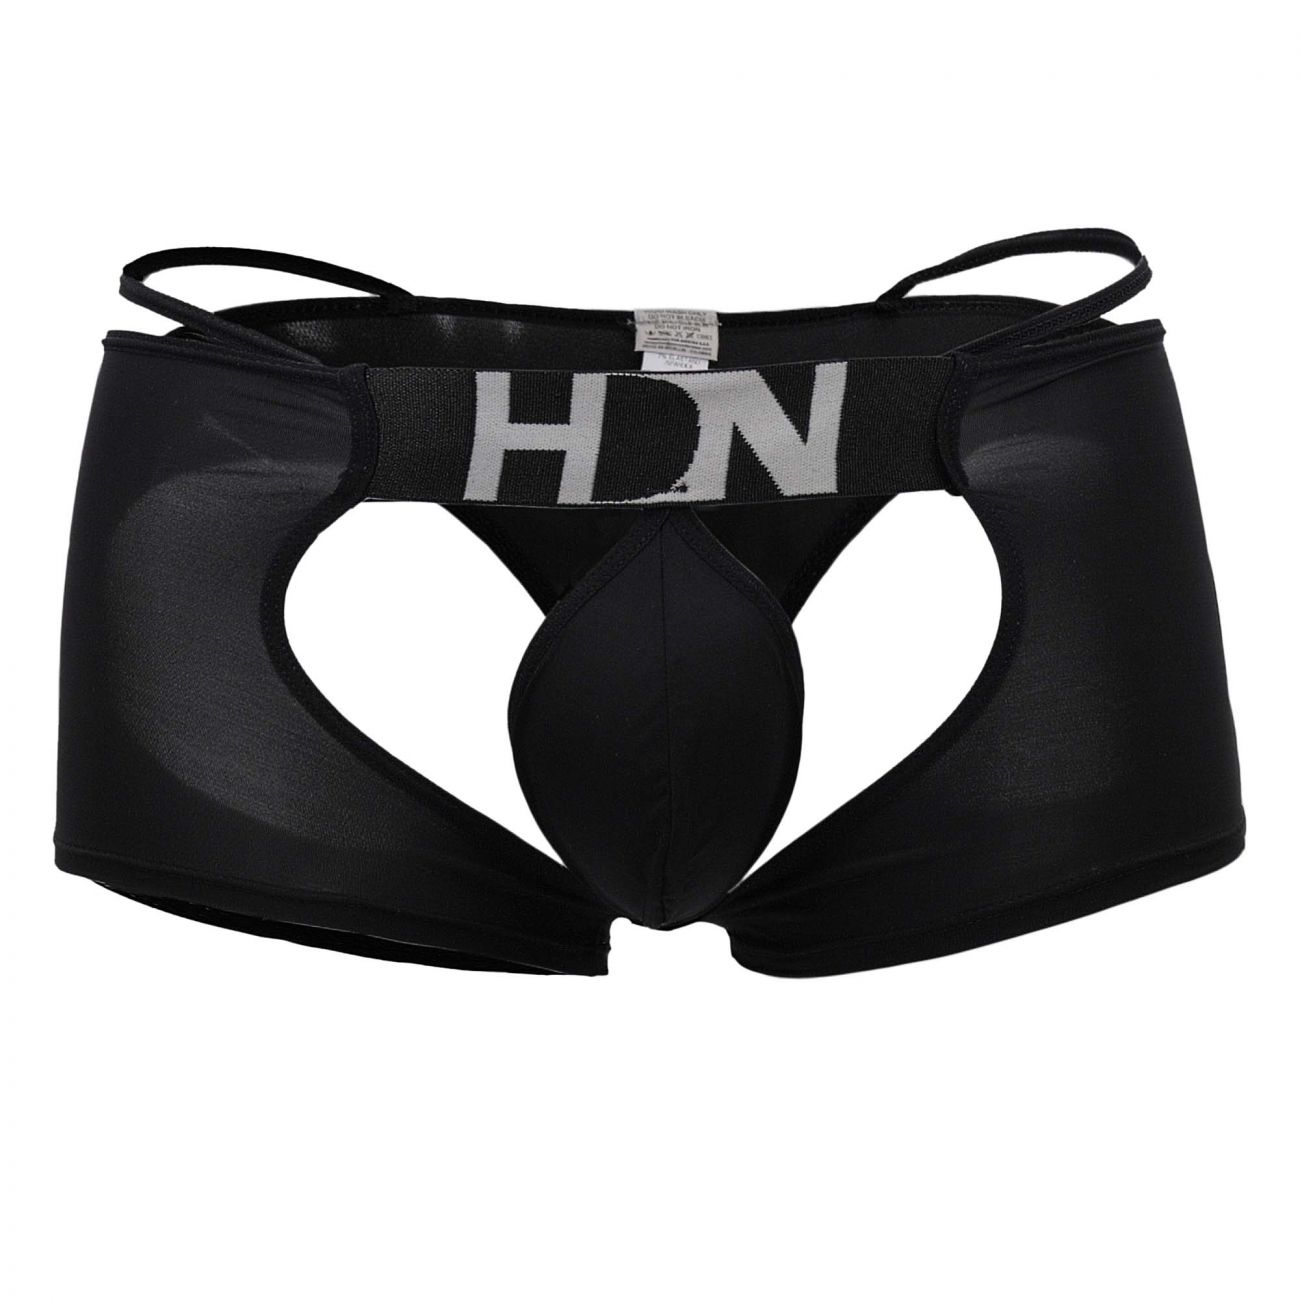 Mens Underwear: Hidden 957 Open Butt Trunk | eBay